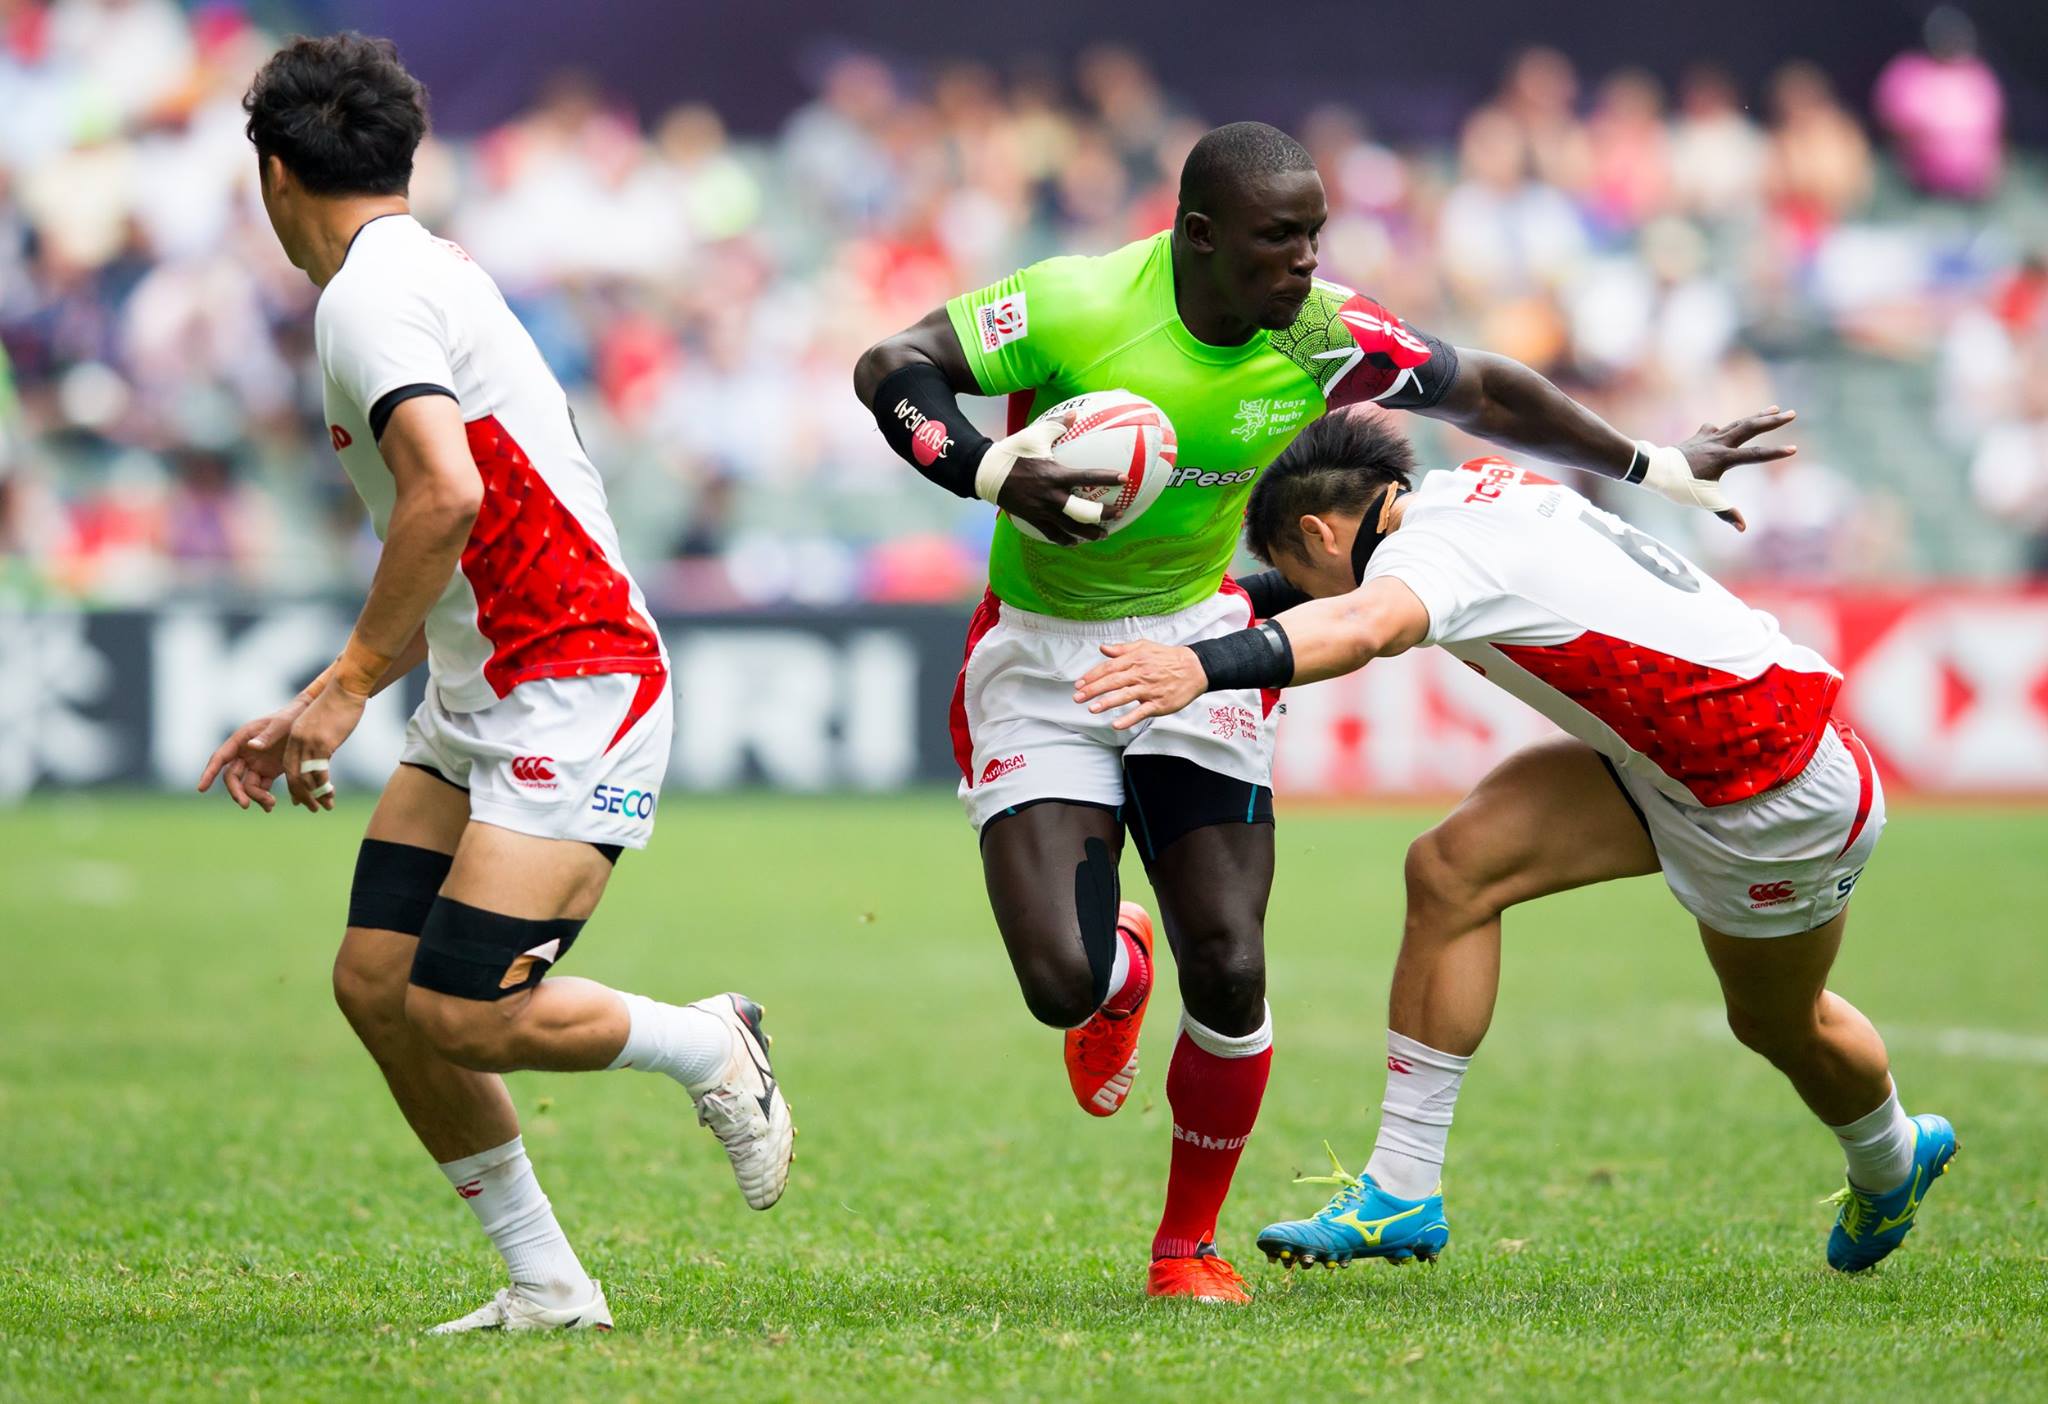 Photo: Kenya Rugby / Facebook